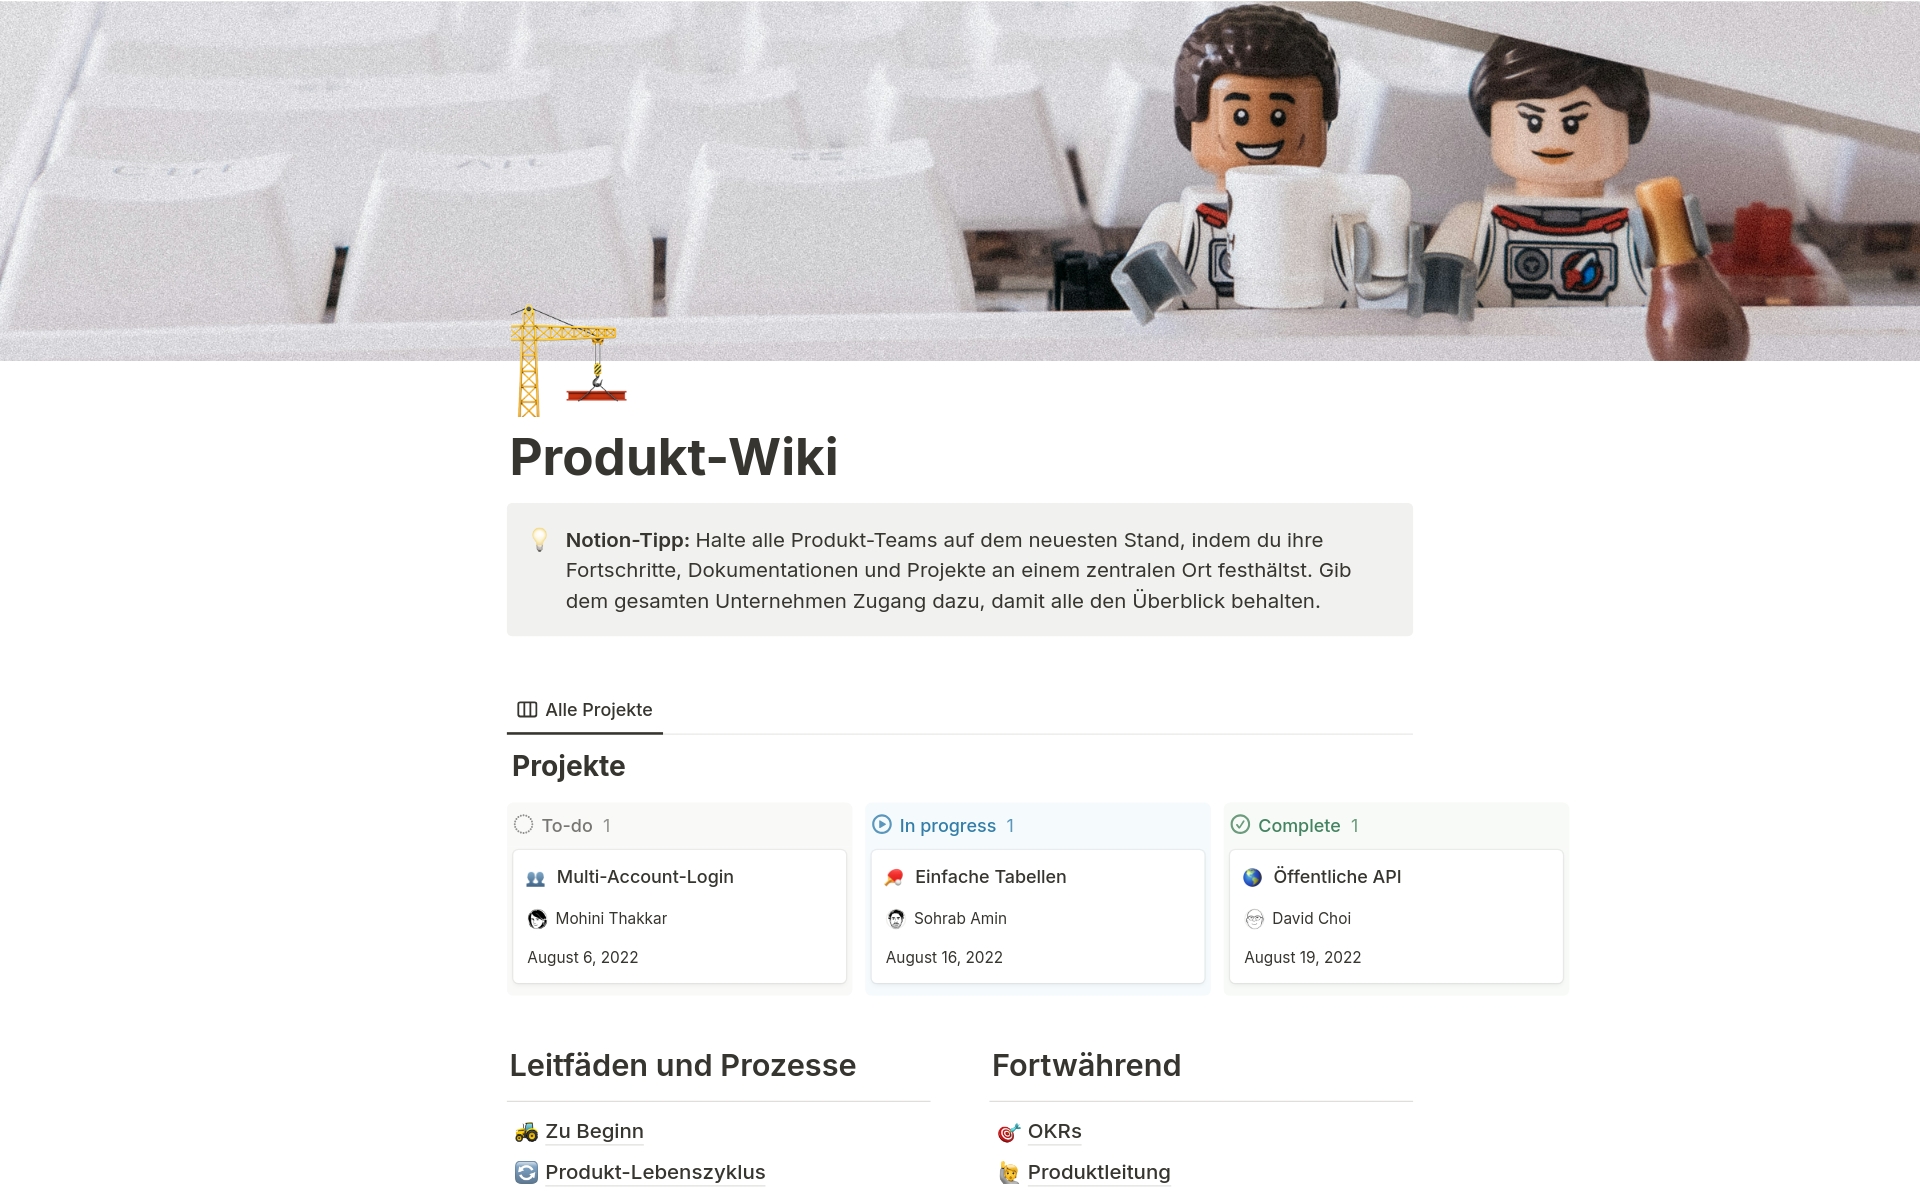 Eine Vorlagenvorschau für Produkt-Wiki